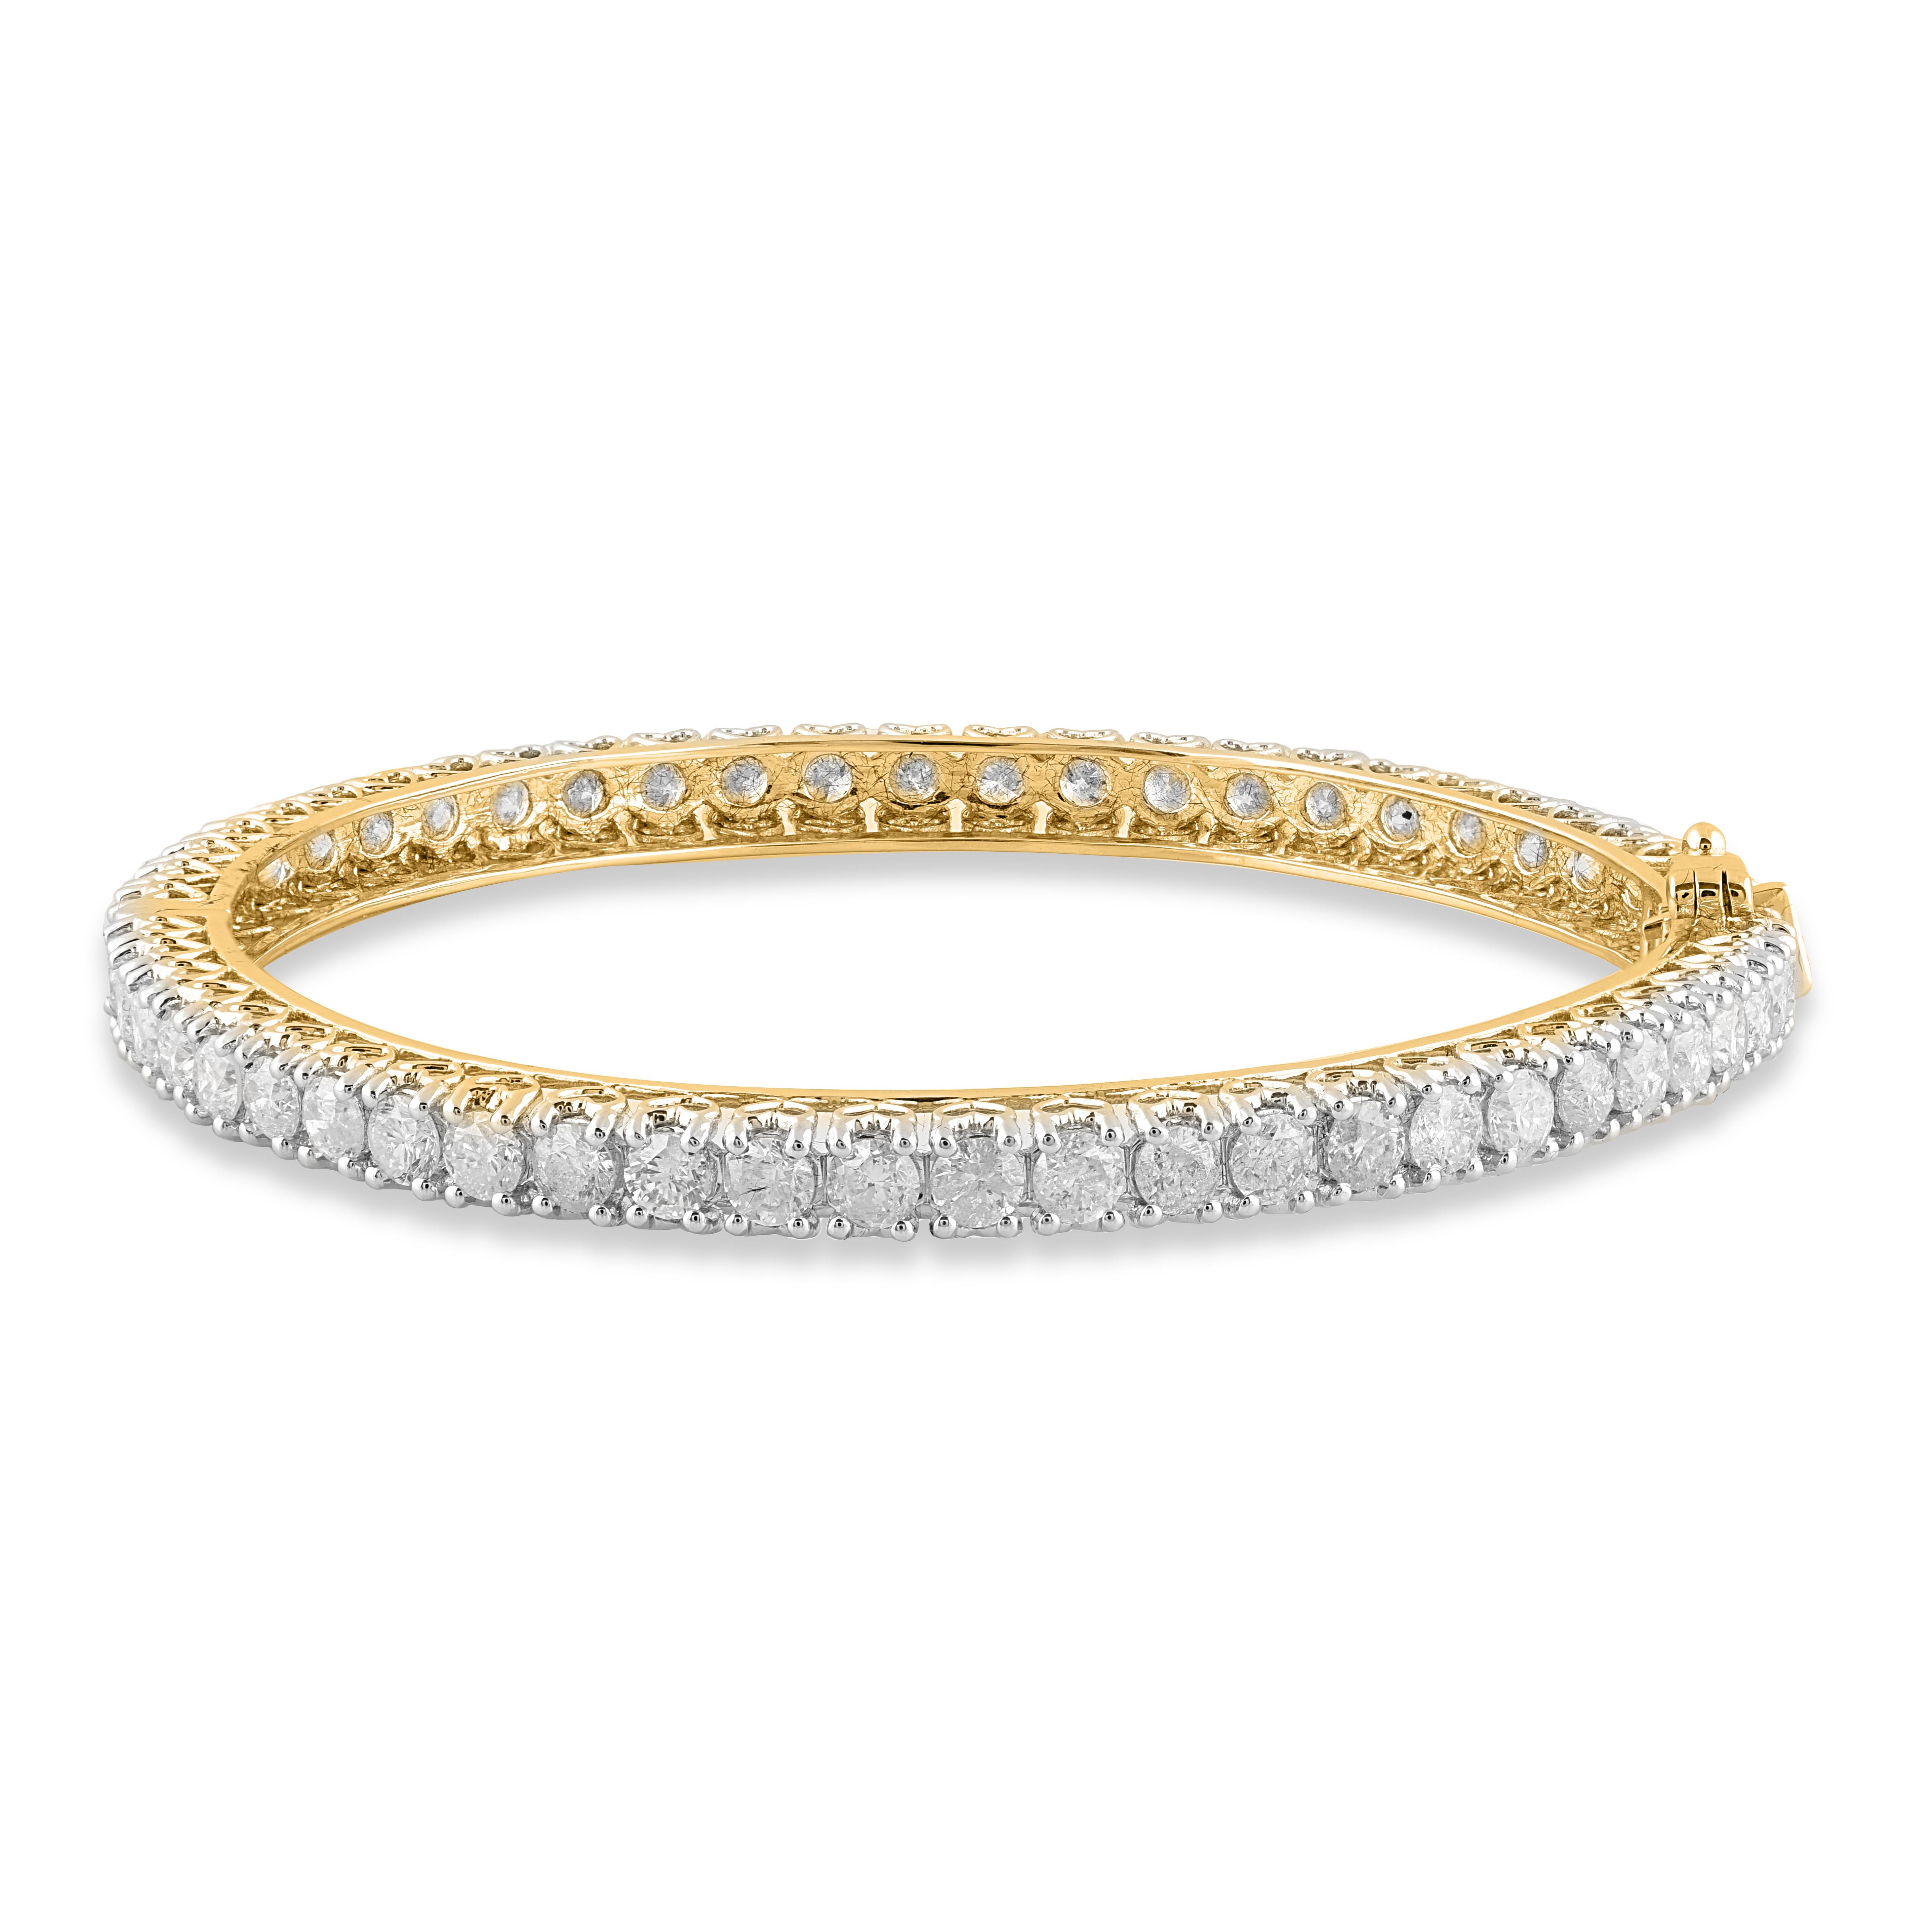 Sie wird den mühelosen Look dieses anmutigen Diamant-Armreifs bewundern, der wirklich exquisit ist. Dieser Designer-Diamantarmreif ist mit 54 runden Brillanten in Zackenfassung besetzt und wurde von unseren Experten in 18 Karat Gelbgold gefertigt.